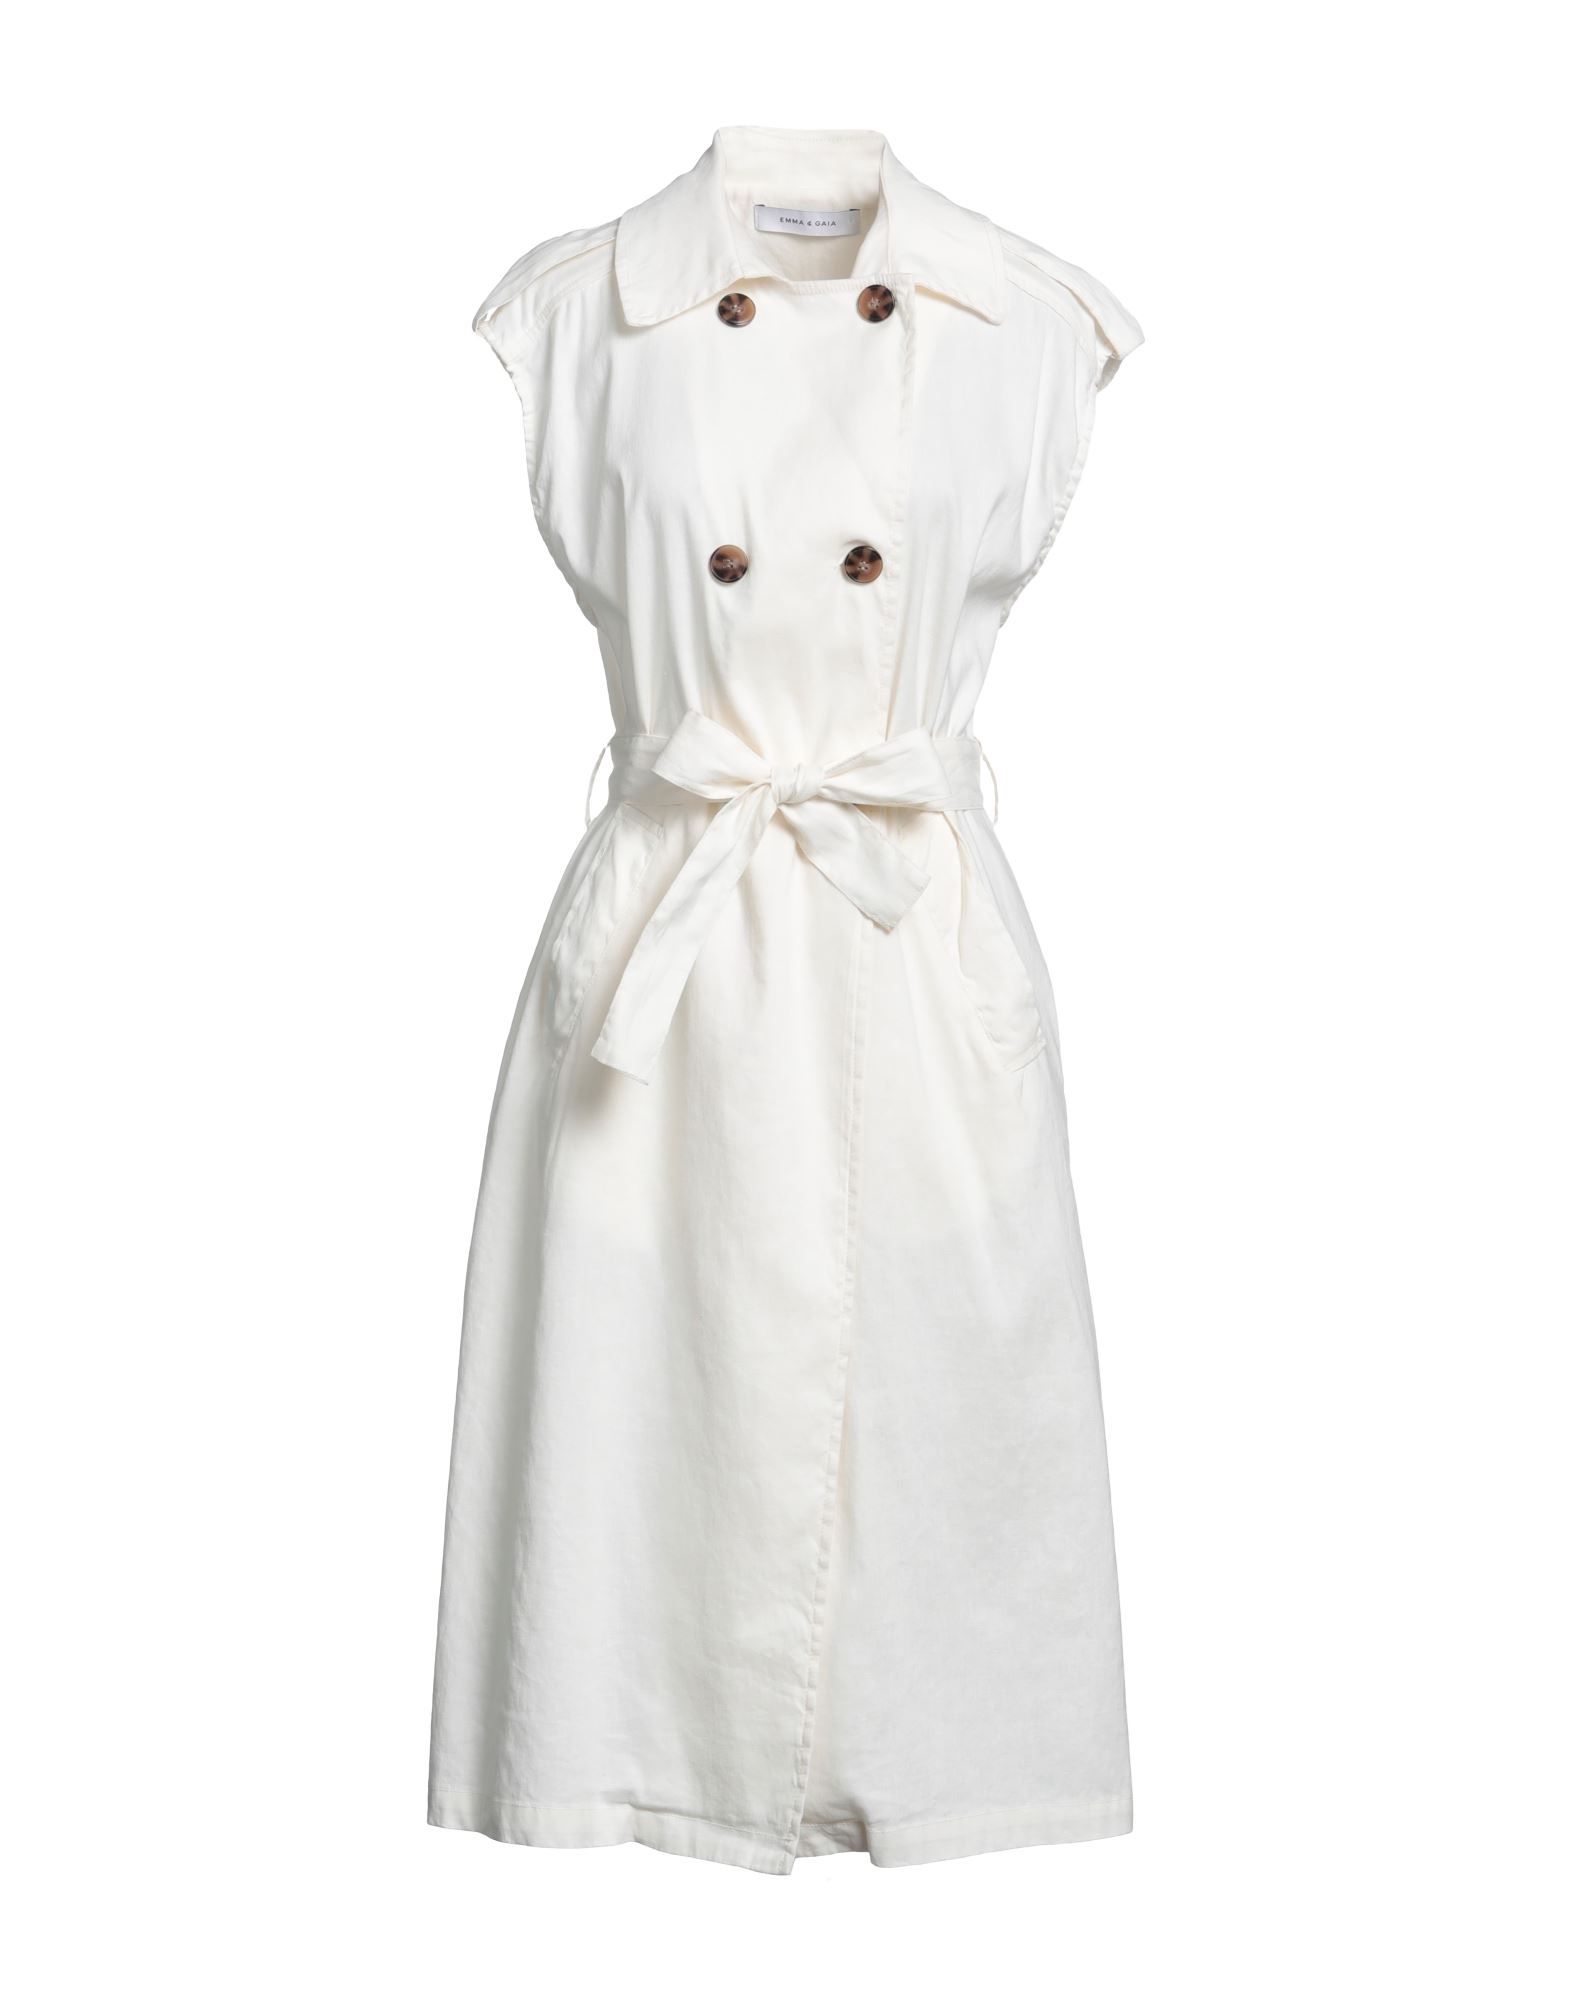 Emma & Gaia Woman Midi Dress White Size 8 Linen, Cotton, Elastane